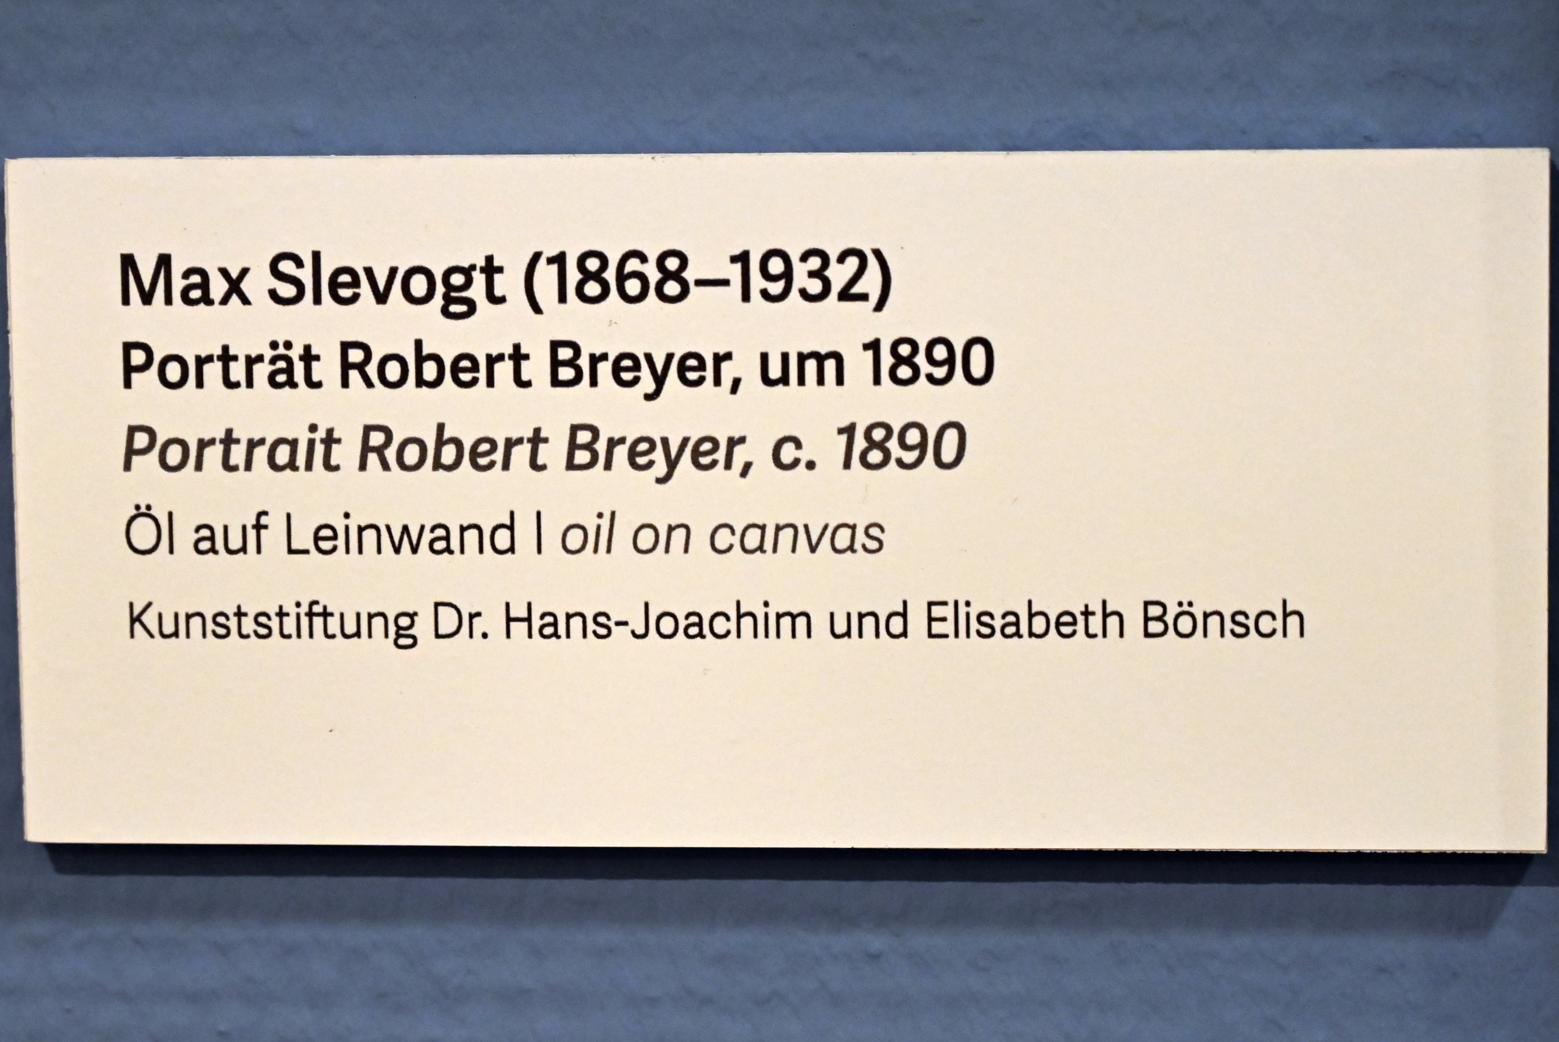 Max Slevogt (1886–1931), Porträt Robert Breyer, Schleswig, Landesmuseum für Kunst und Kulturgeschichte, Kunst im 20. Jh., um 1890, Bild 2/2